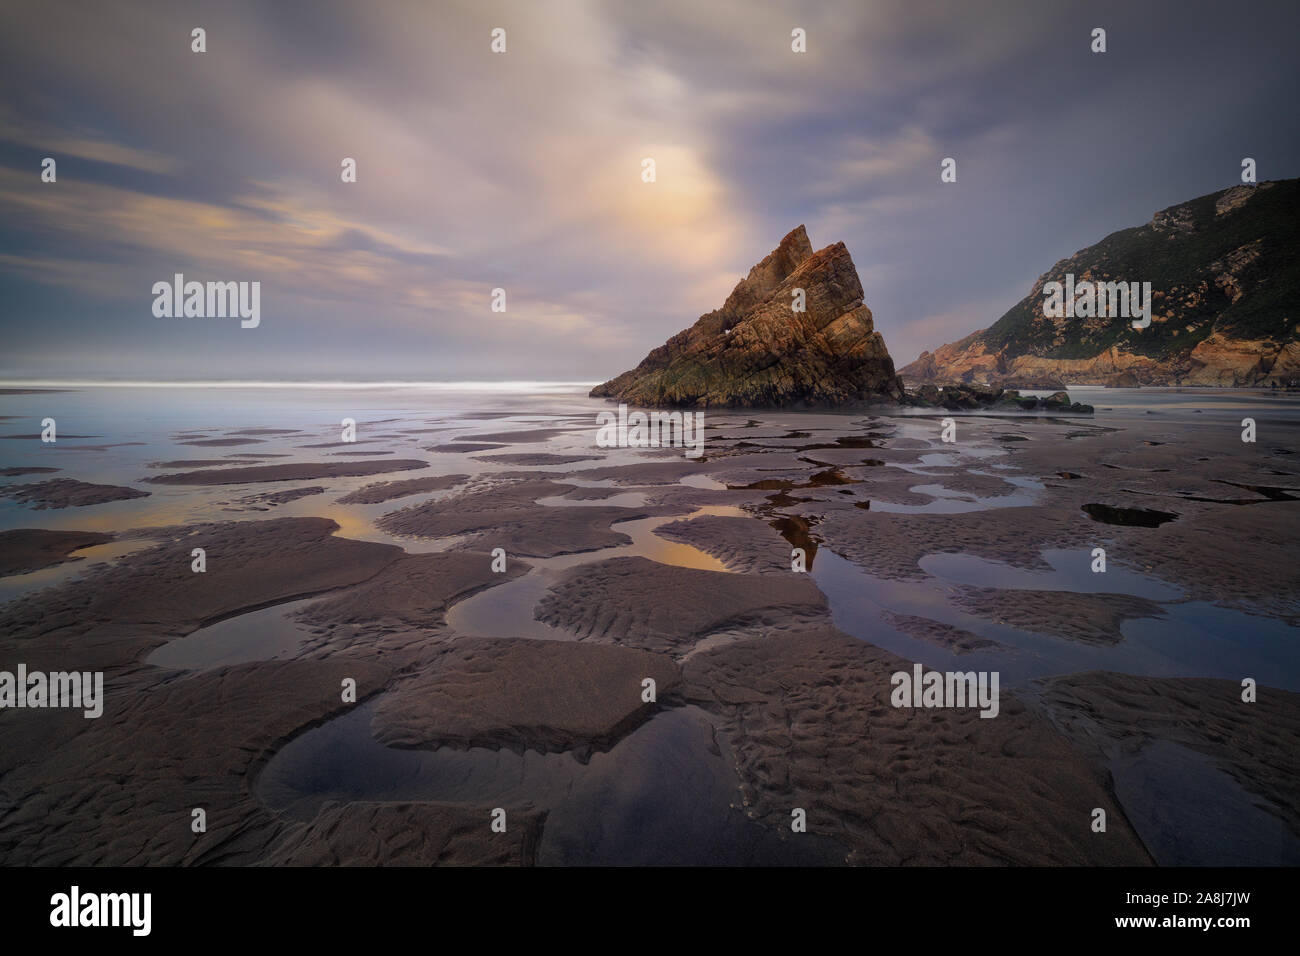 Formación de roca triangular y patrón reflexiones sobre la arena, en una playa de Asturias, la costa cantábrica, en España. Playon de bayas. Nuboso por la mañana. Foto de stock